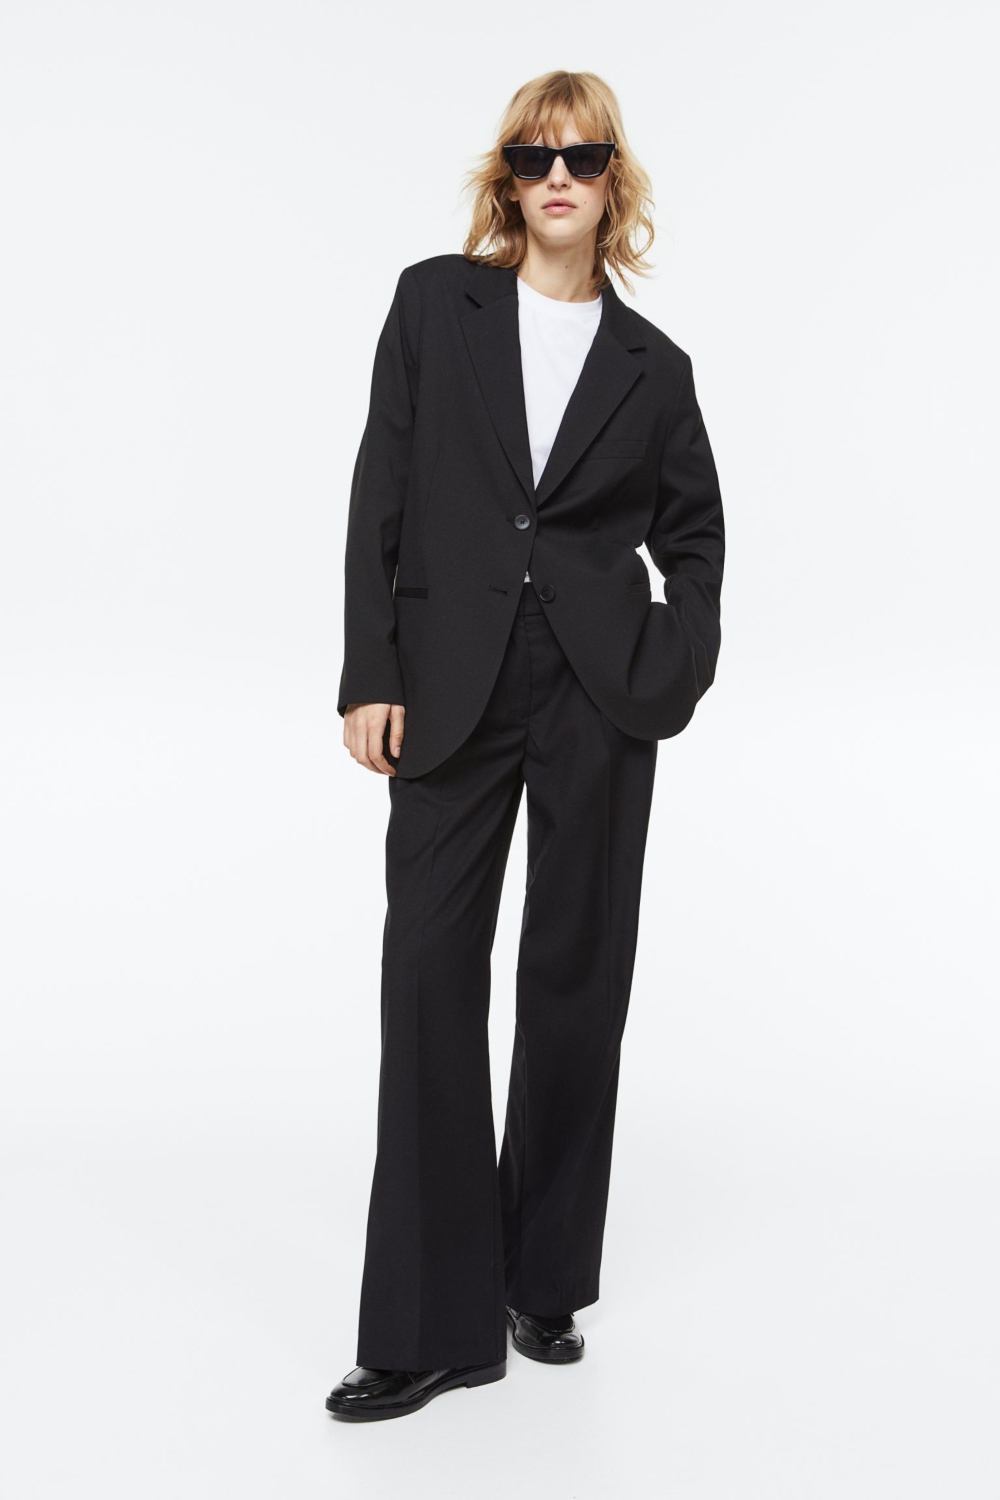 Poslovne crne pantalone 8 komada za idealan prolećni kapsula garderober   koje možete kupiti u Srbiji